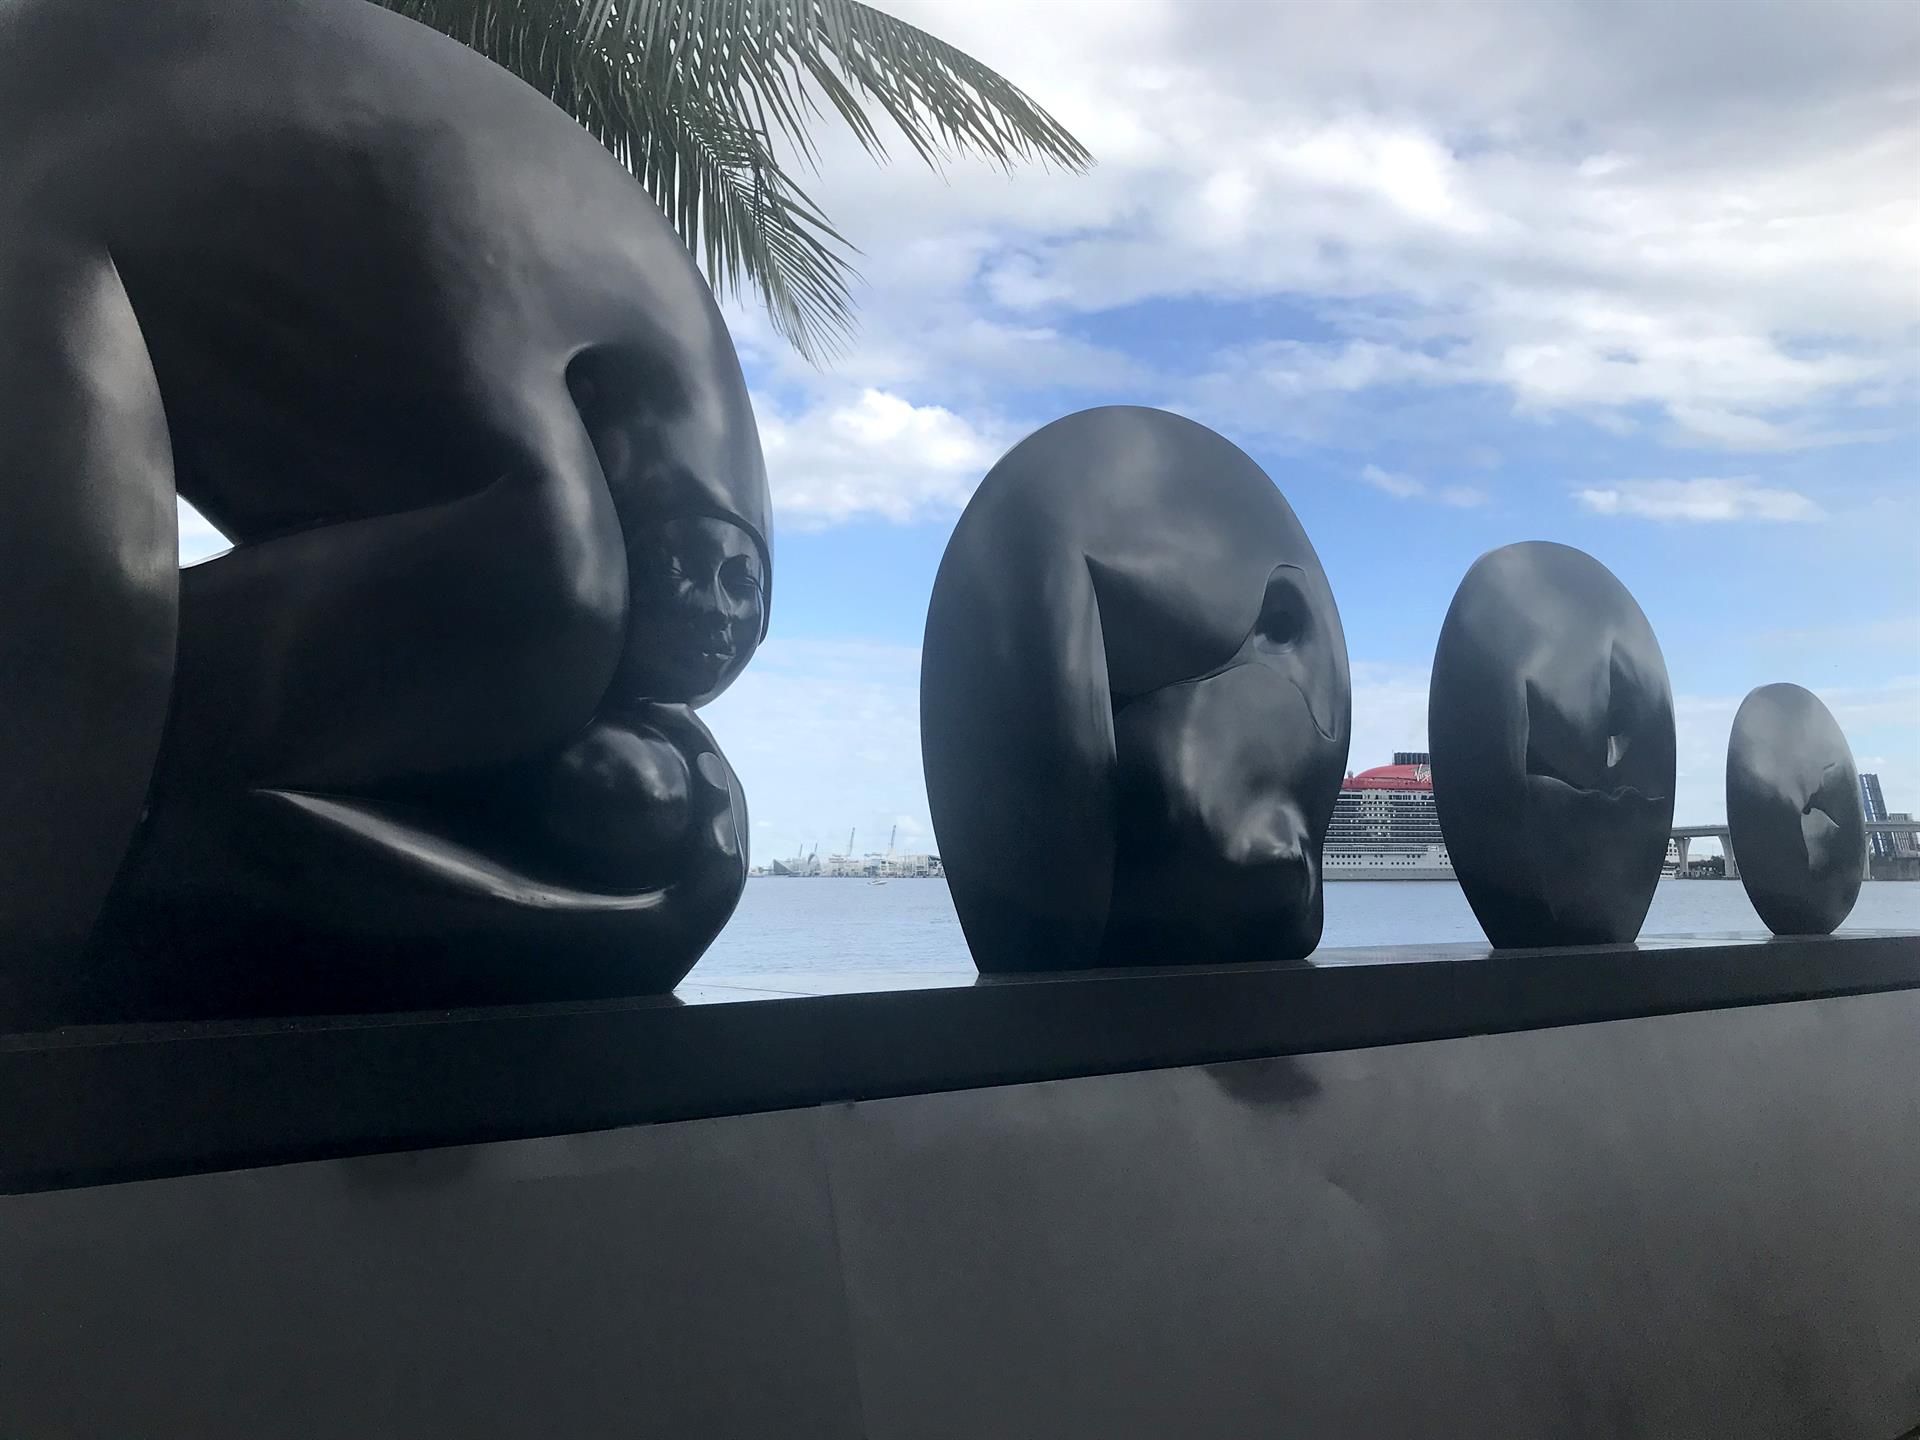 Fotografía de una de las esculturas del artista costarricense Jorge Jiménez Deredia, instaladas en el parque Maurice A. Ferré por su exposición "Un puente de luz", el 5 de octubre de 2022, en Miami, Florida (EE.UU.). EFE/Ana Mengotti